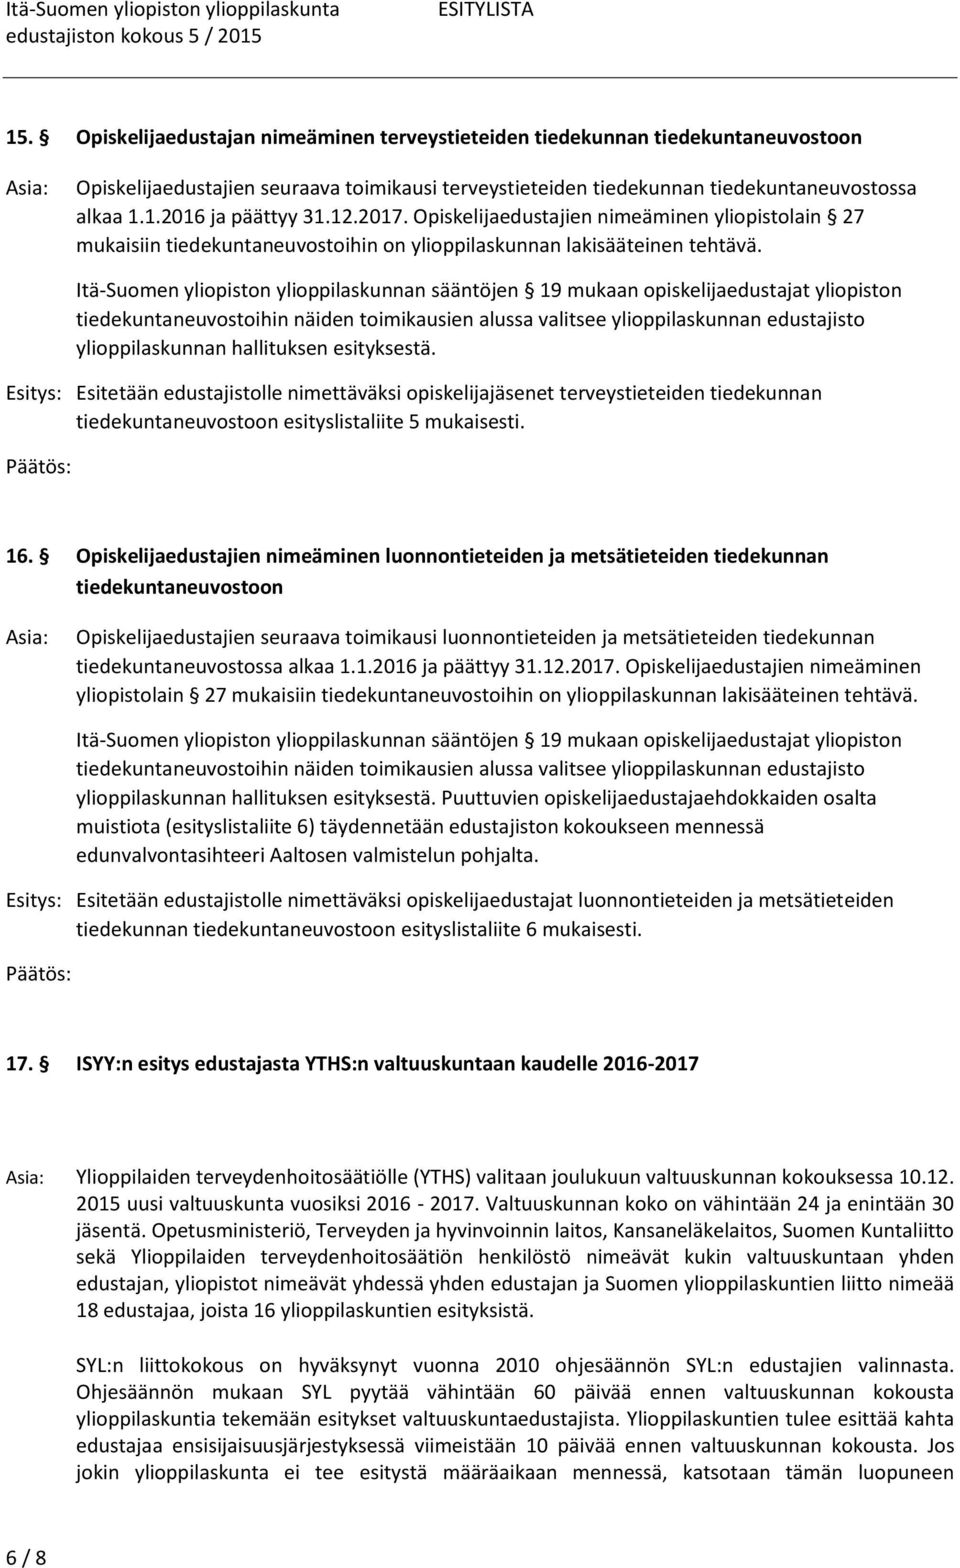 Itä-Suomen yliopiston ylioppilaskunnan sääntöjen 19 mukaan opiskelijaedustajat yliopiston tiedekuntaneuvostoihin näiden toimikausien alussa valitsee ylioppilaskunnan edustajisto ylioppilaskunnan